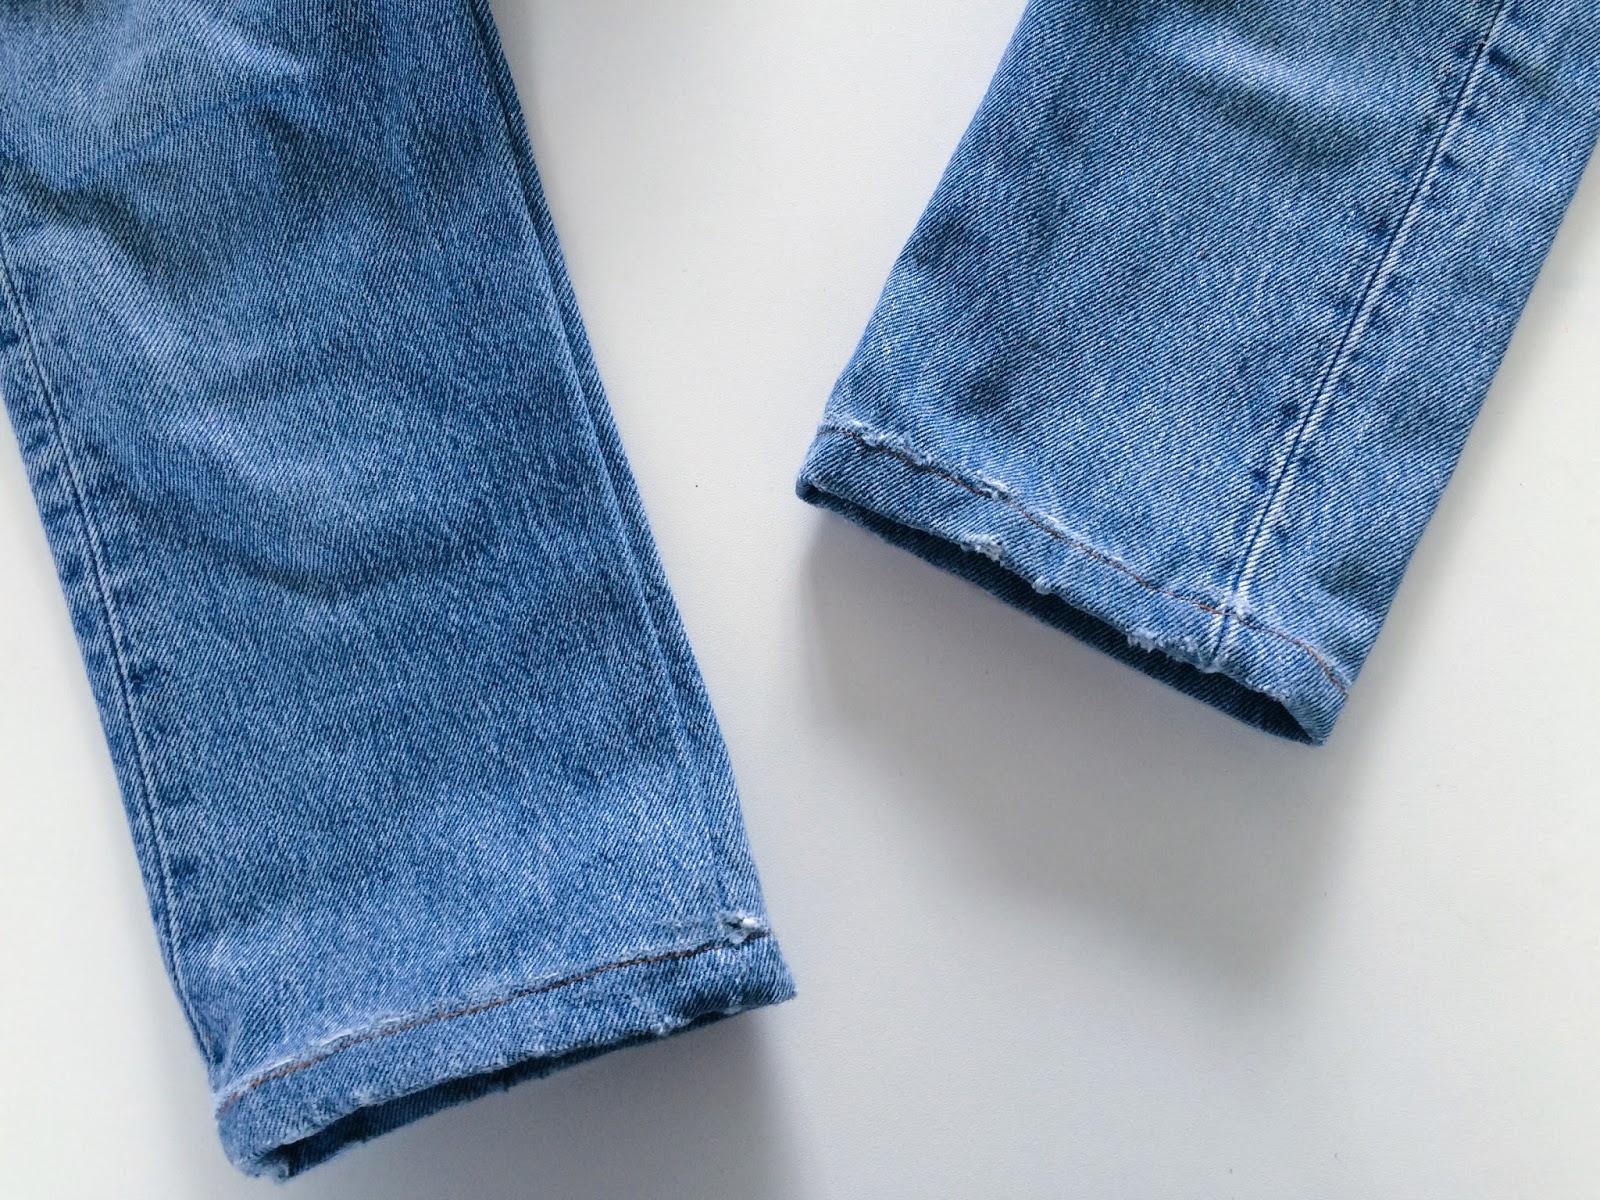 levi's 501 jeans search & destroy